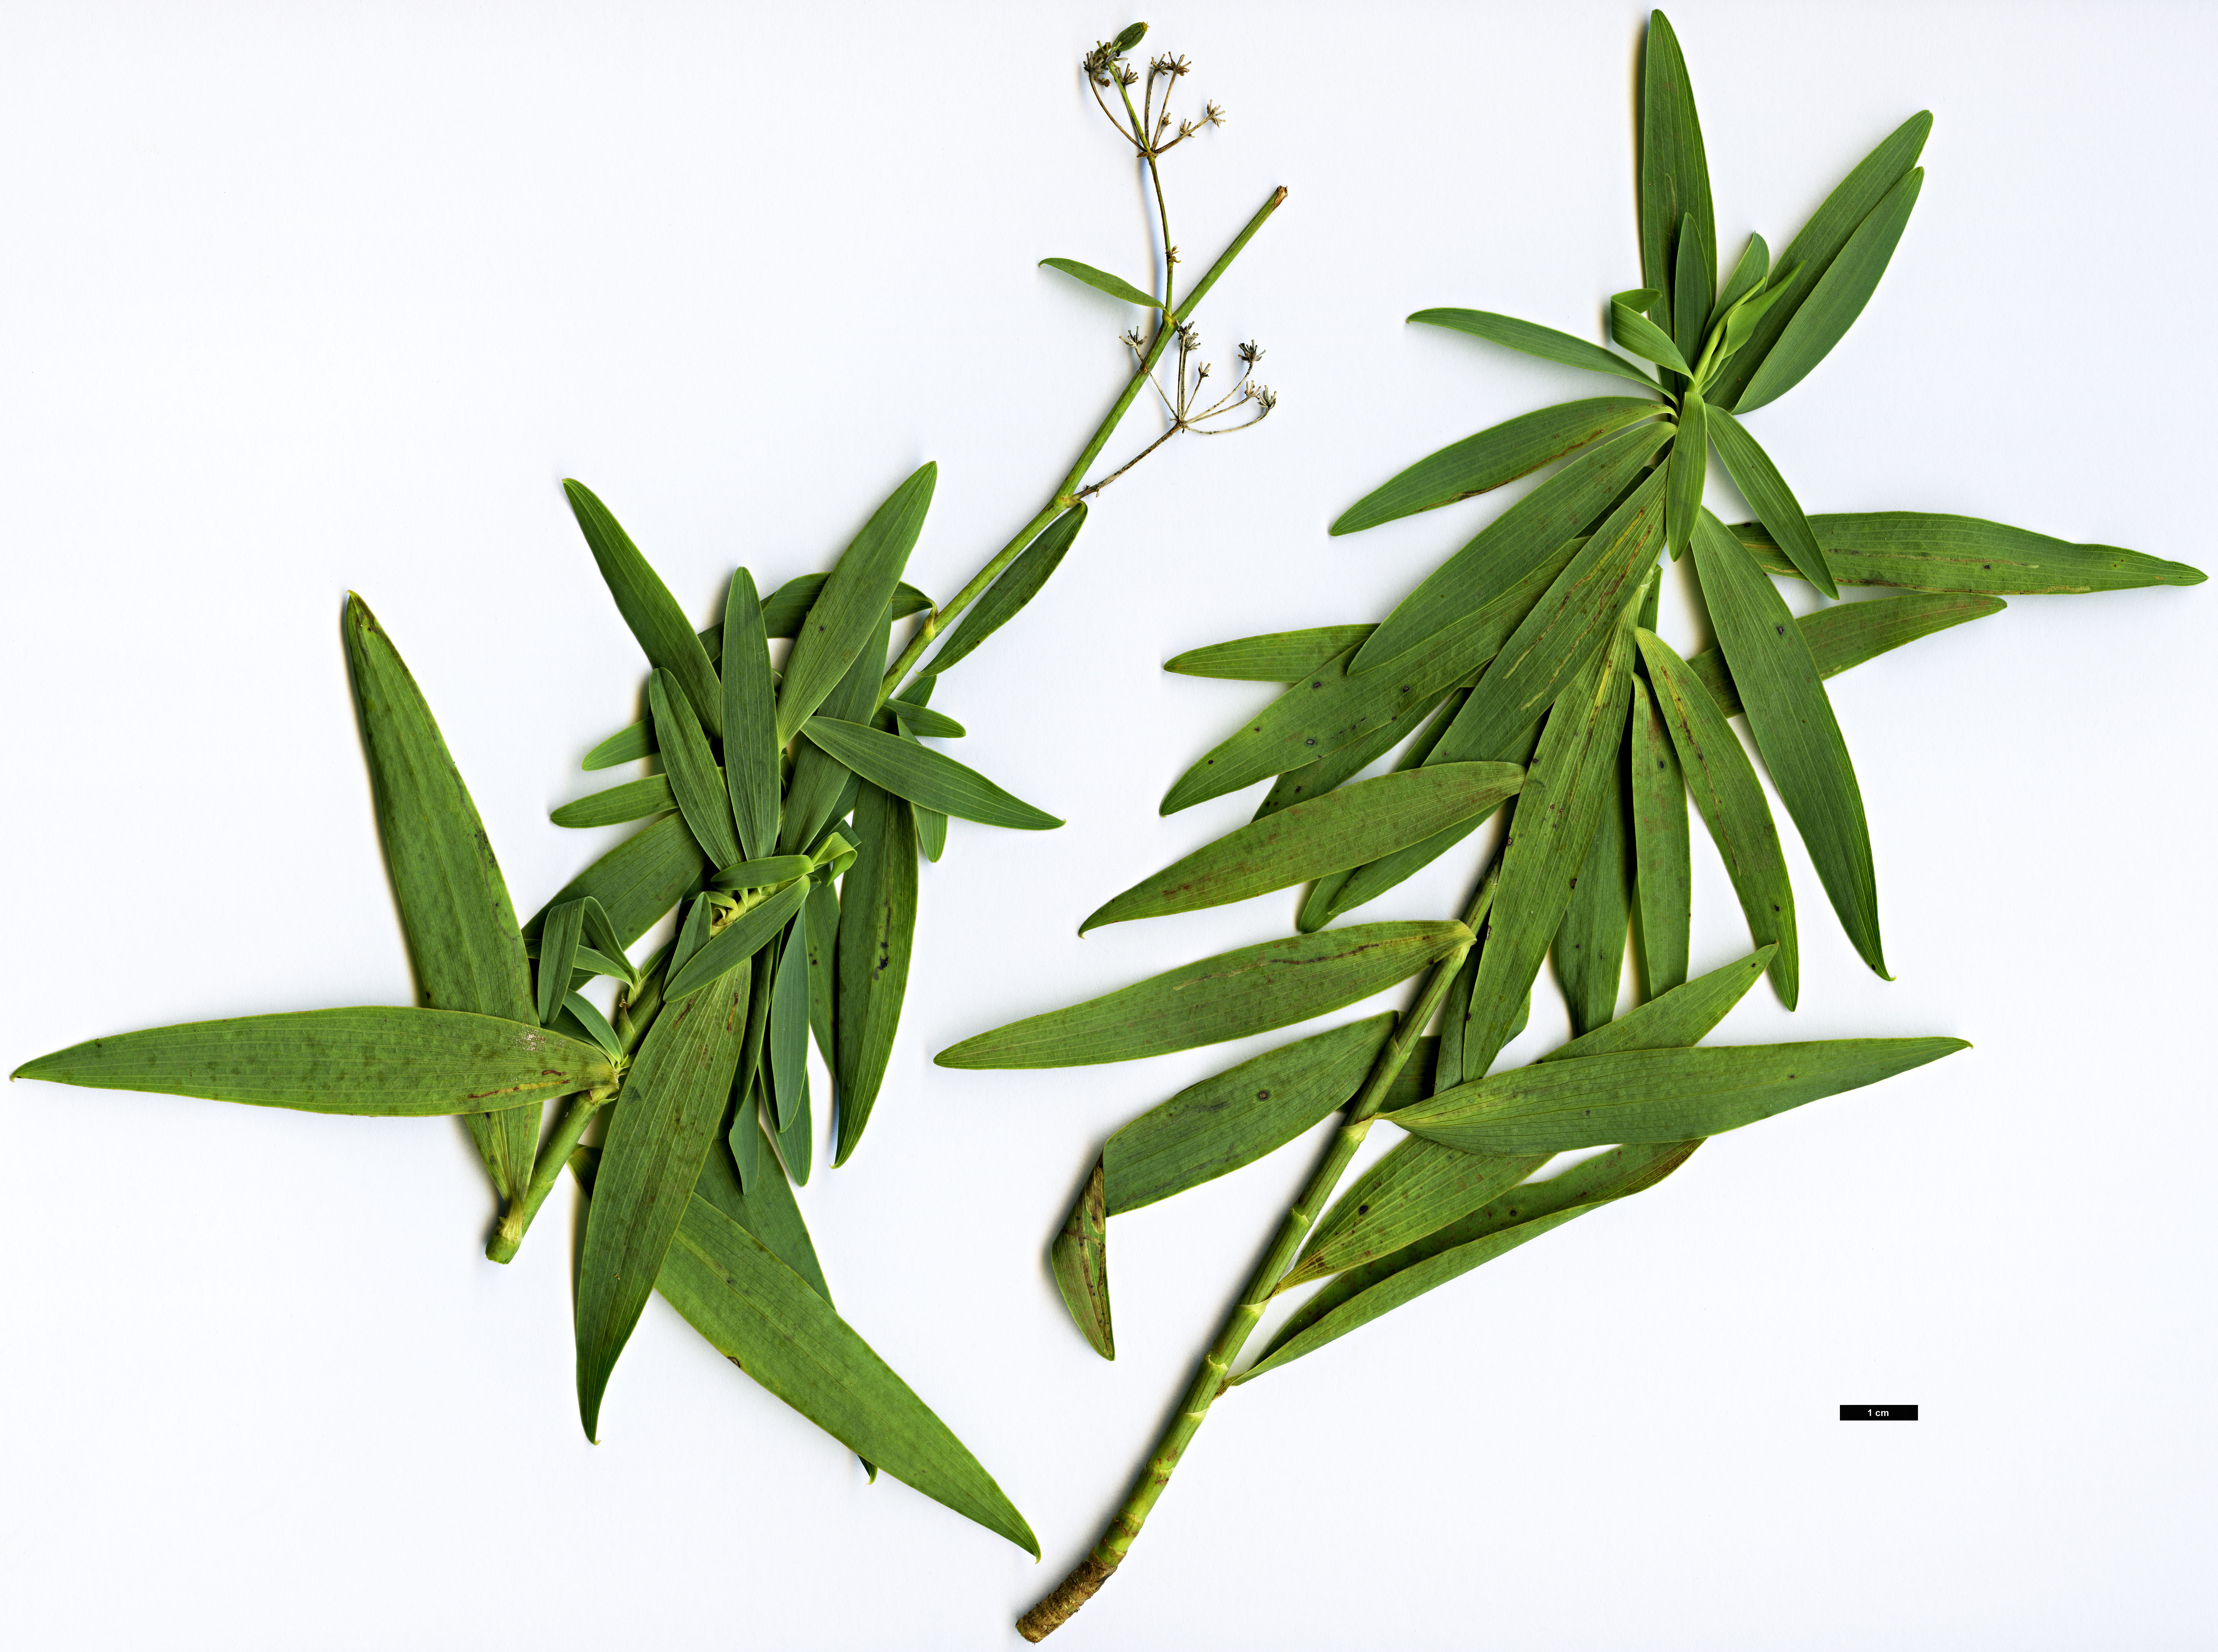 High resolution image: Family: Apiaceae - Genus: Bupleurum - Taxon: salicifolium  - SpeciesSub: subsp. salicifolium var. salicifolium